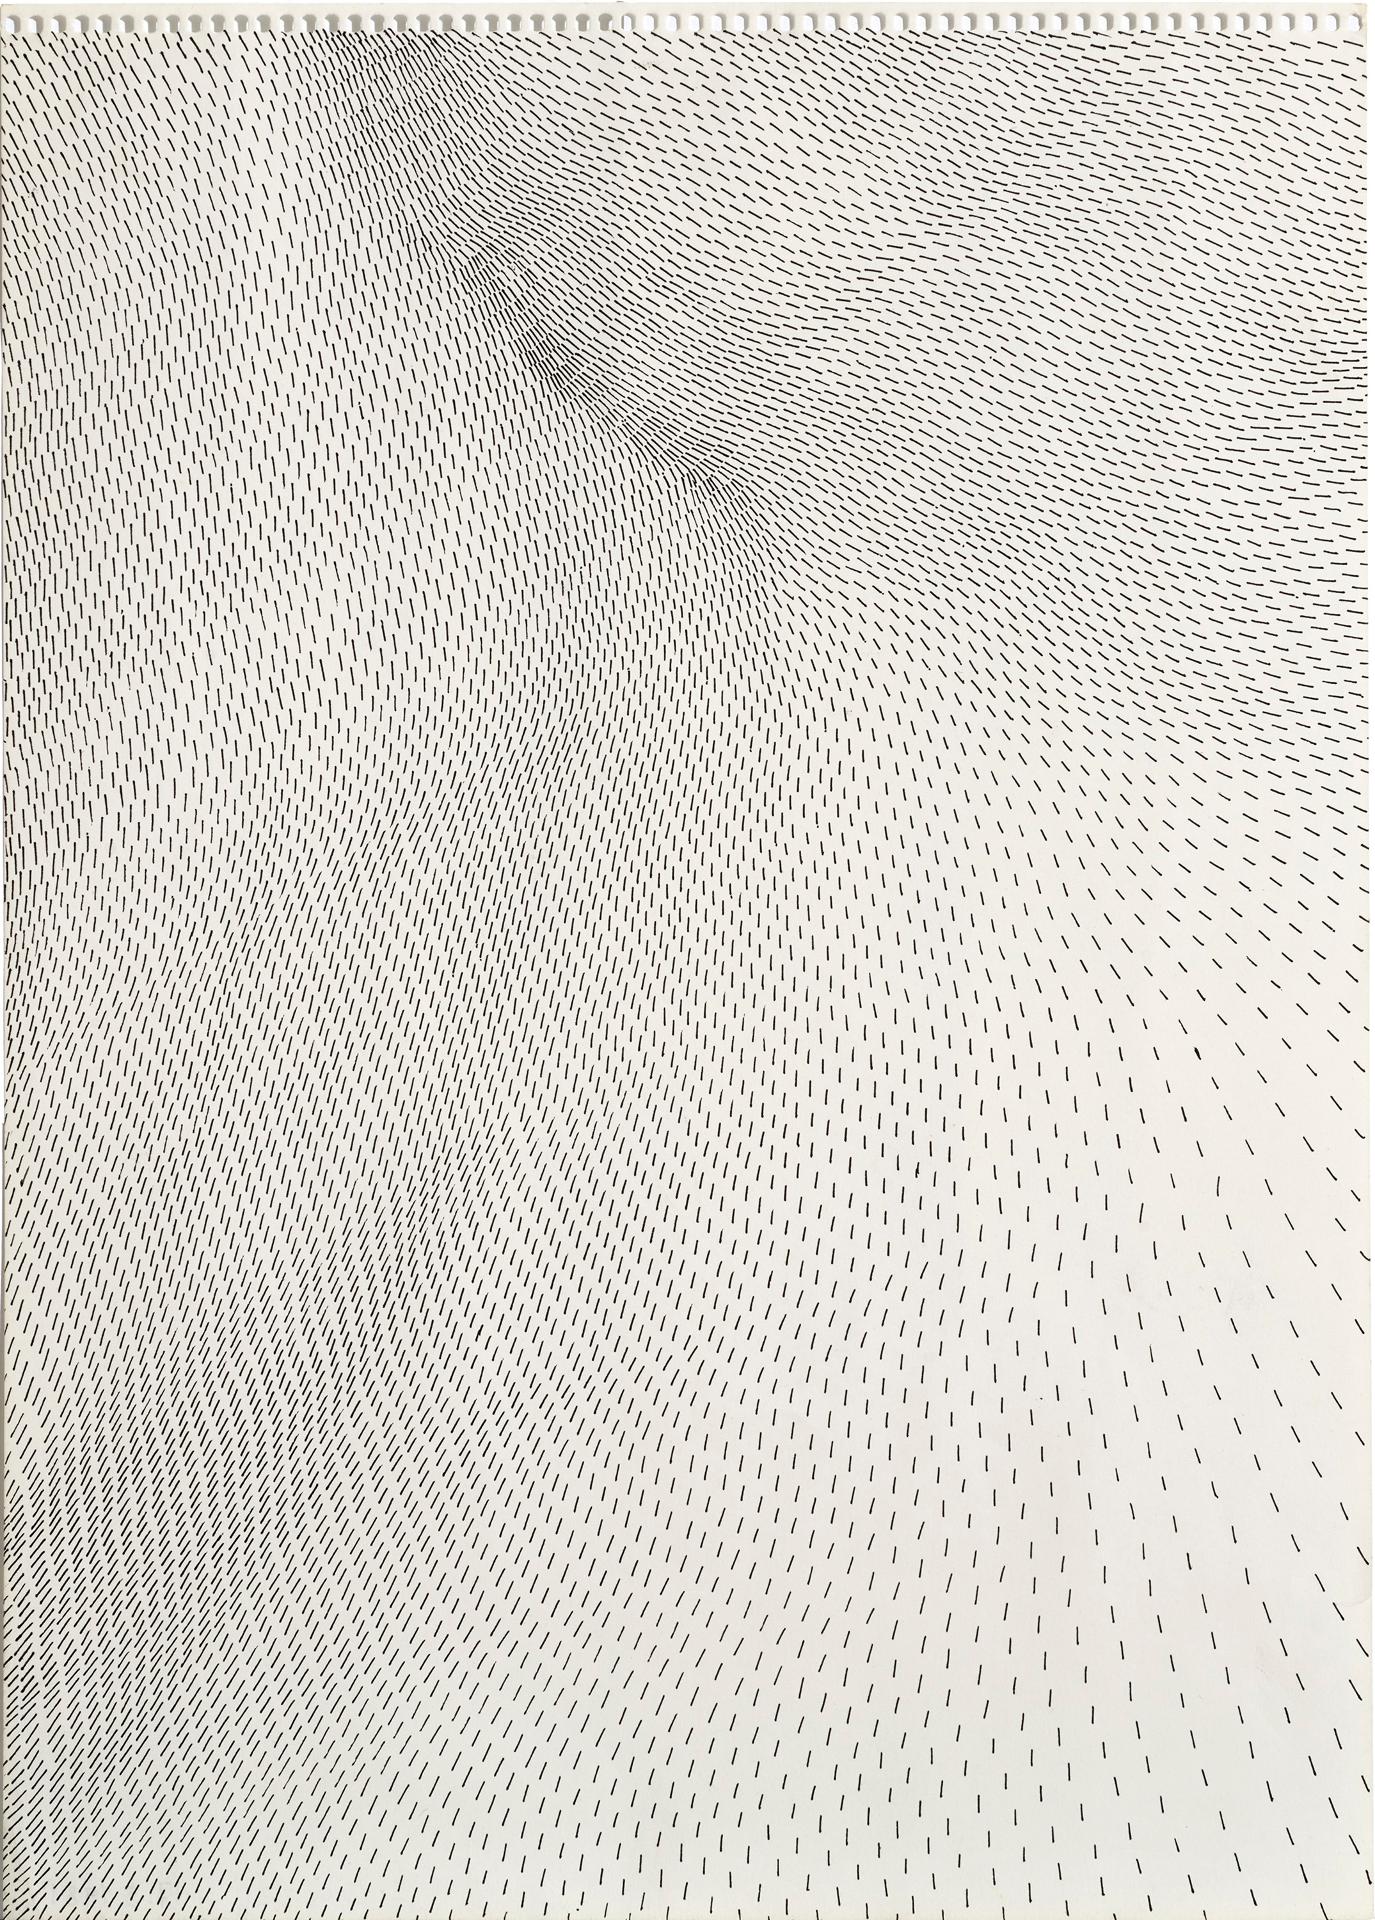 Gerlinde Wurth - Sans titre / Untitled, 1981